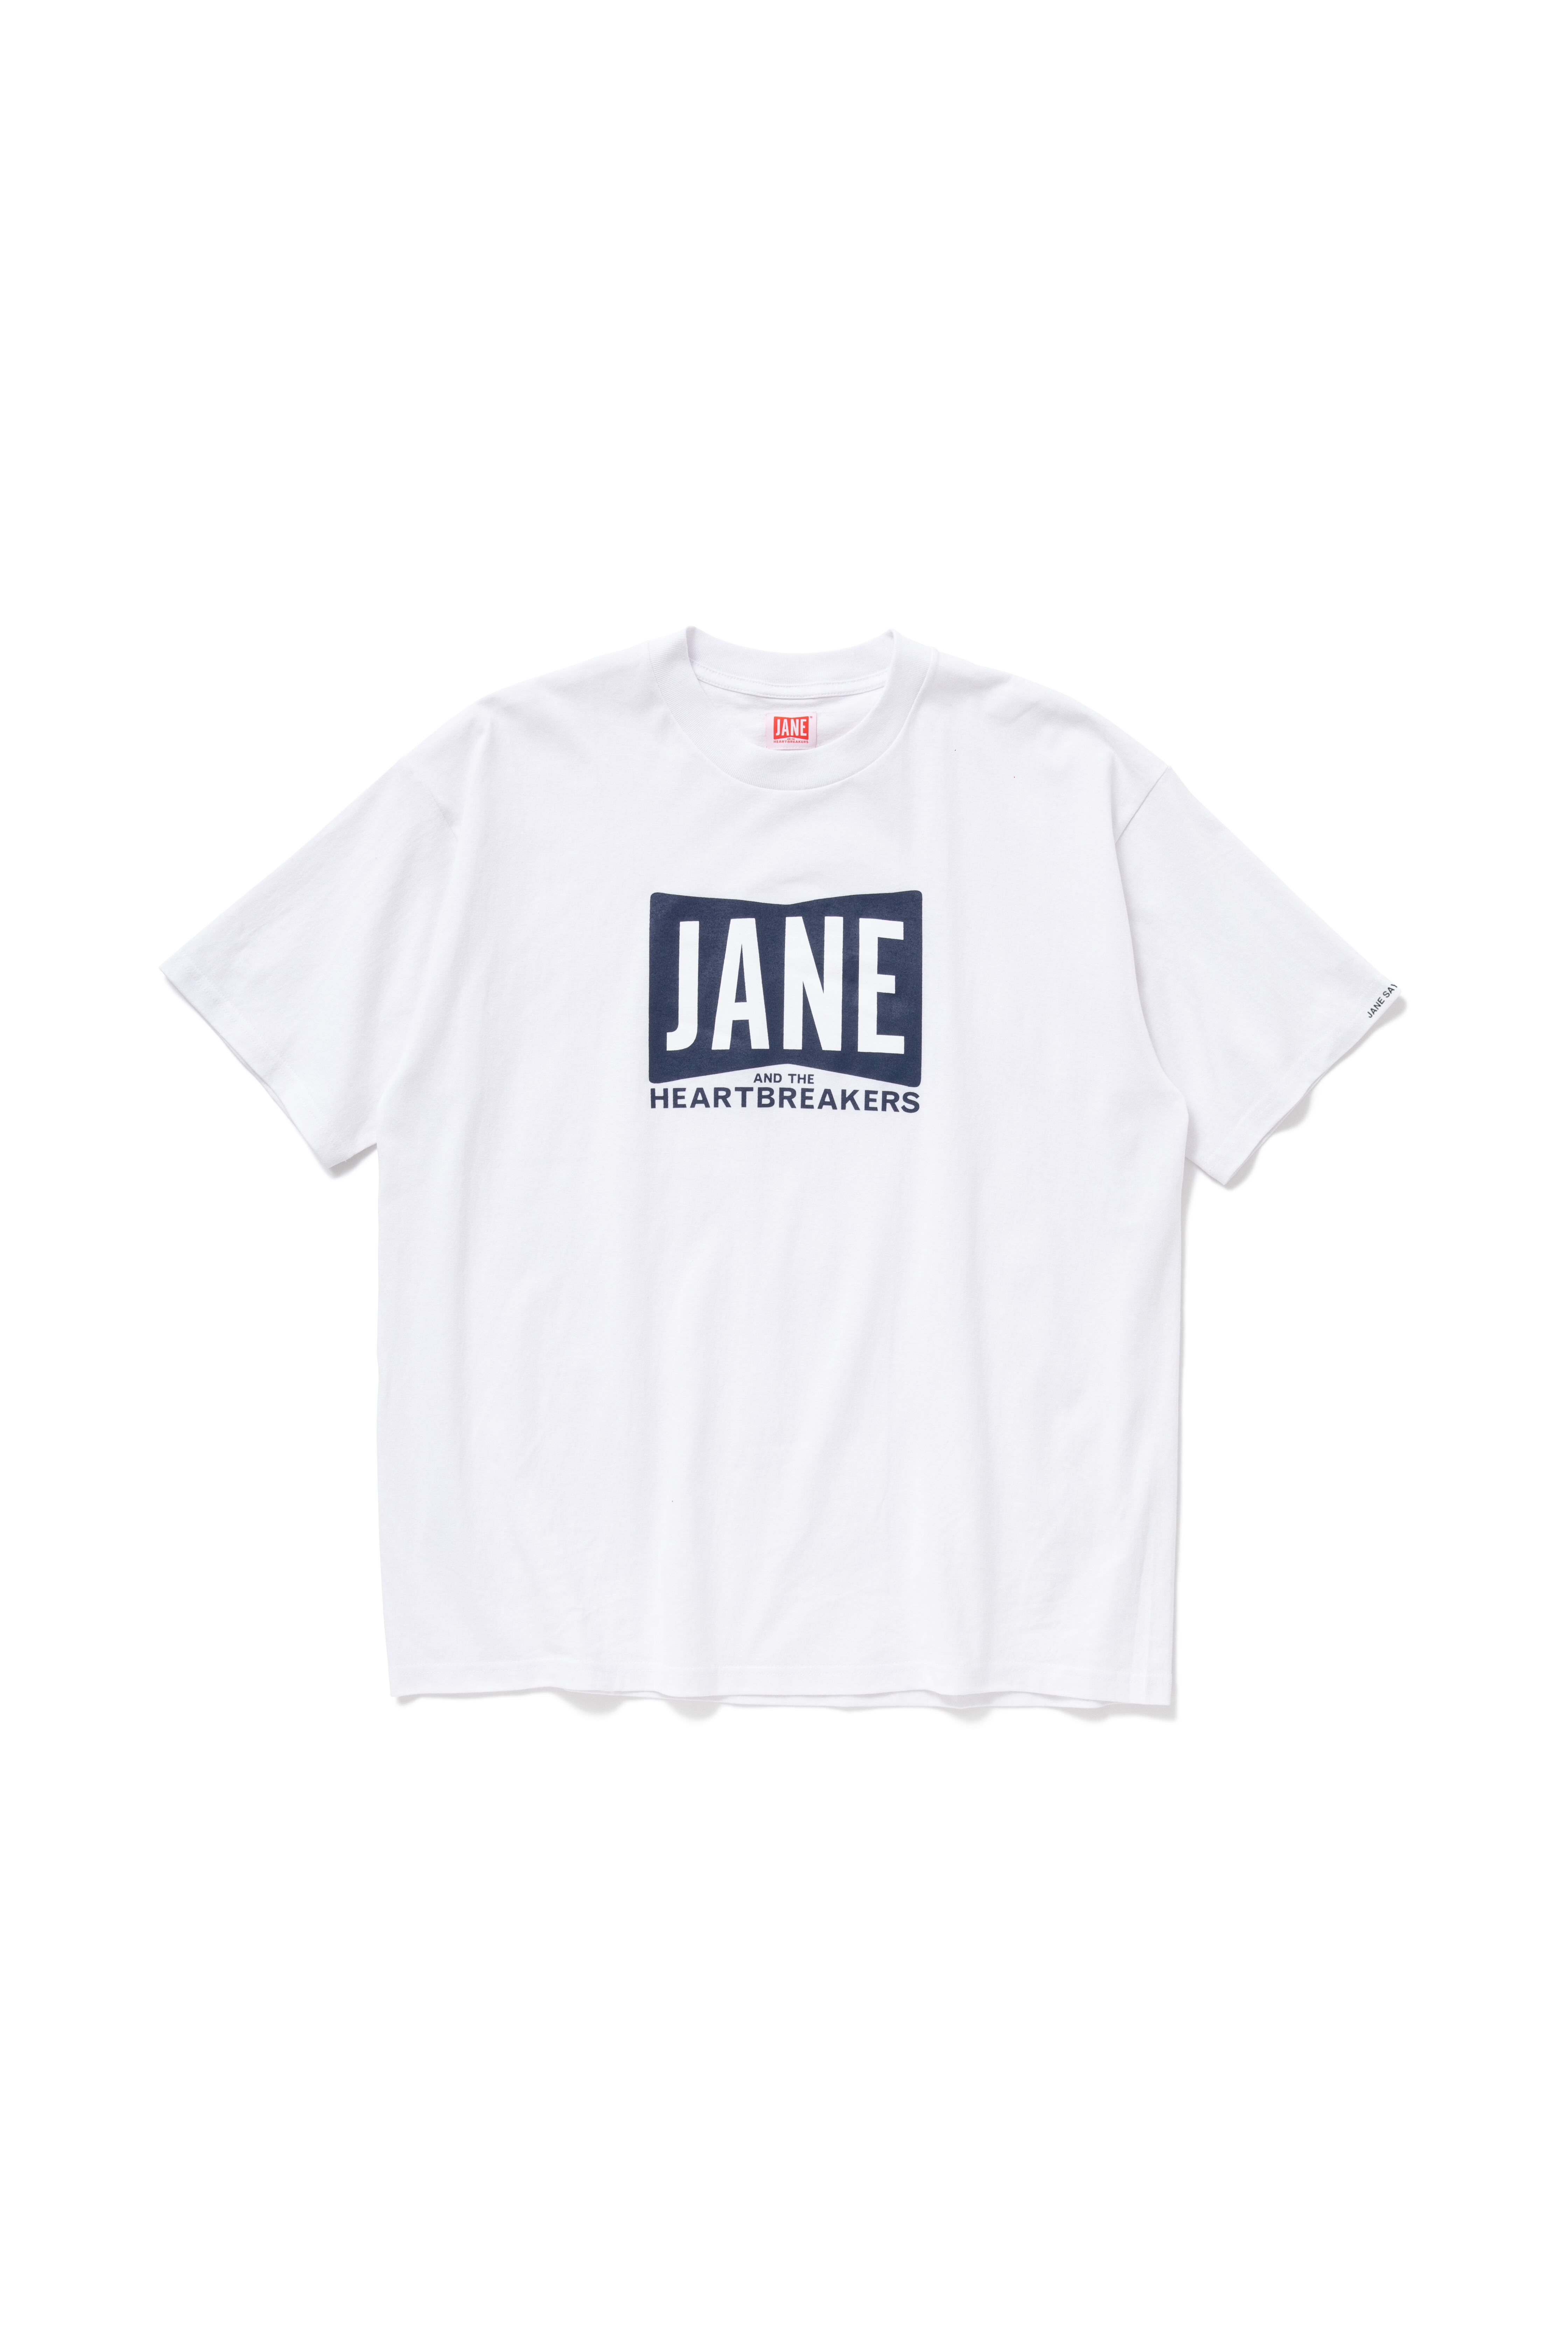 【木村拓哉着用】JANE & THE HEARTBREAKERS Tシャツ XL